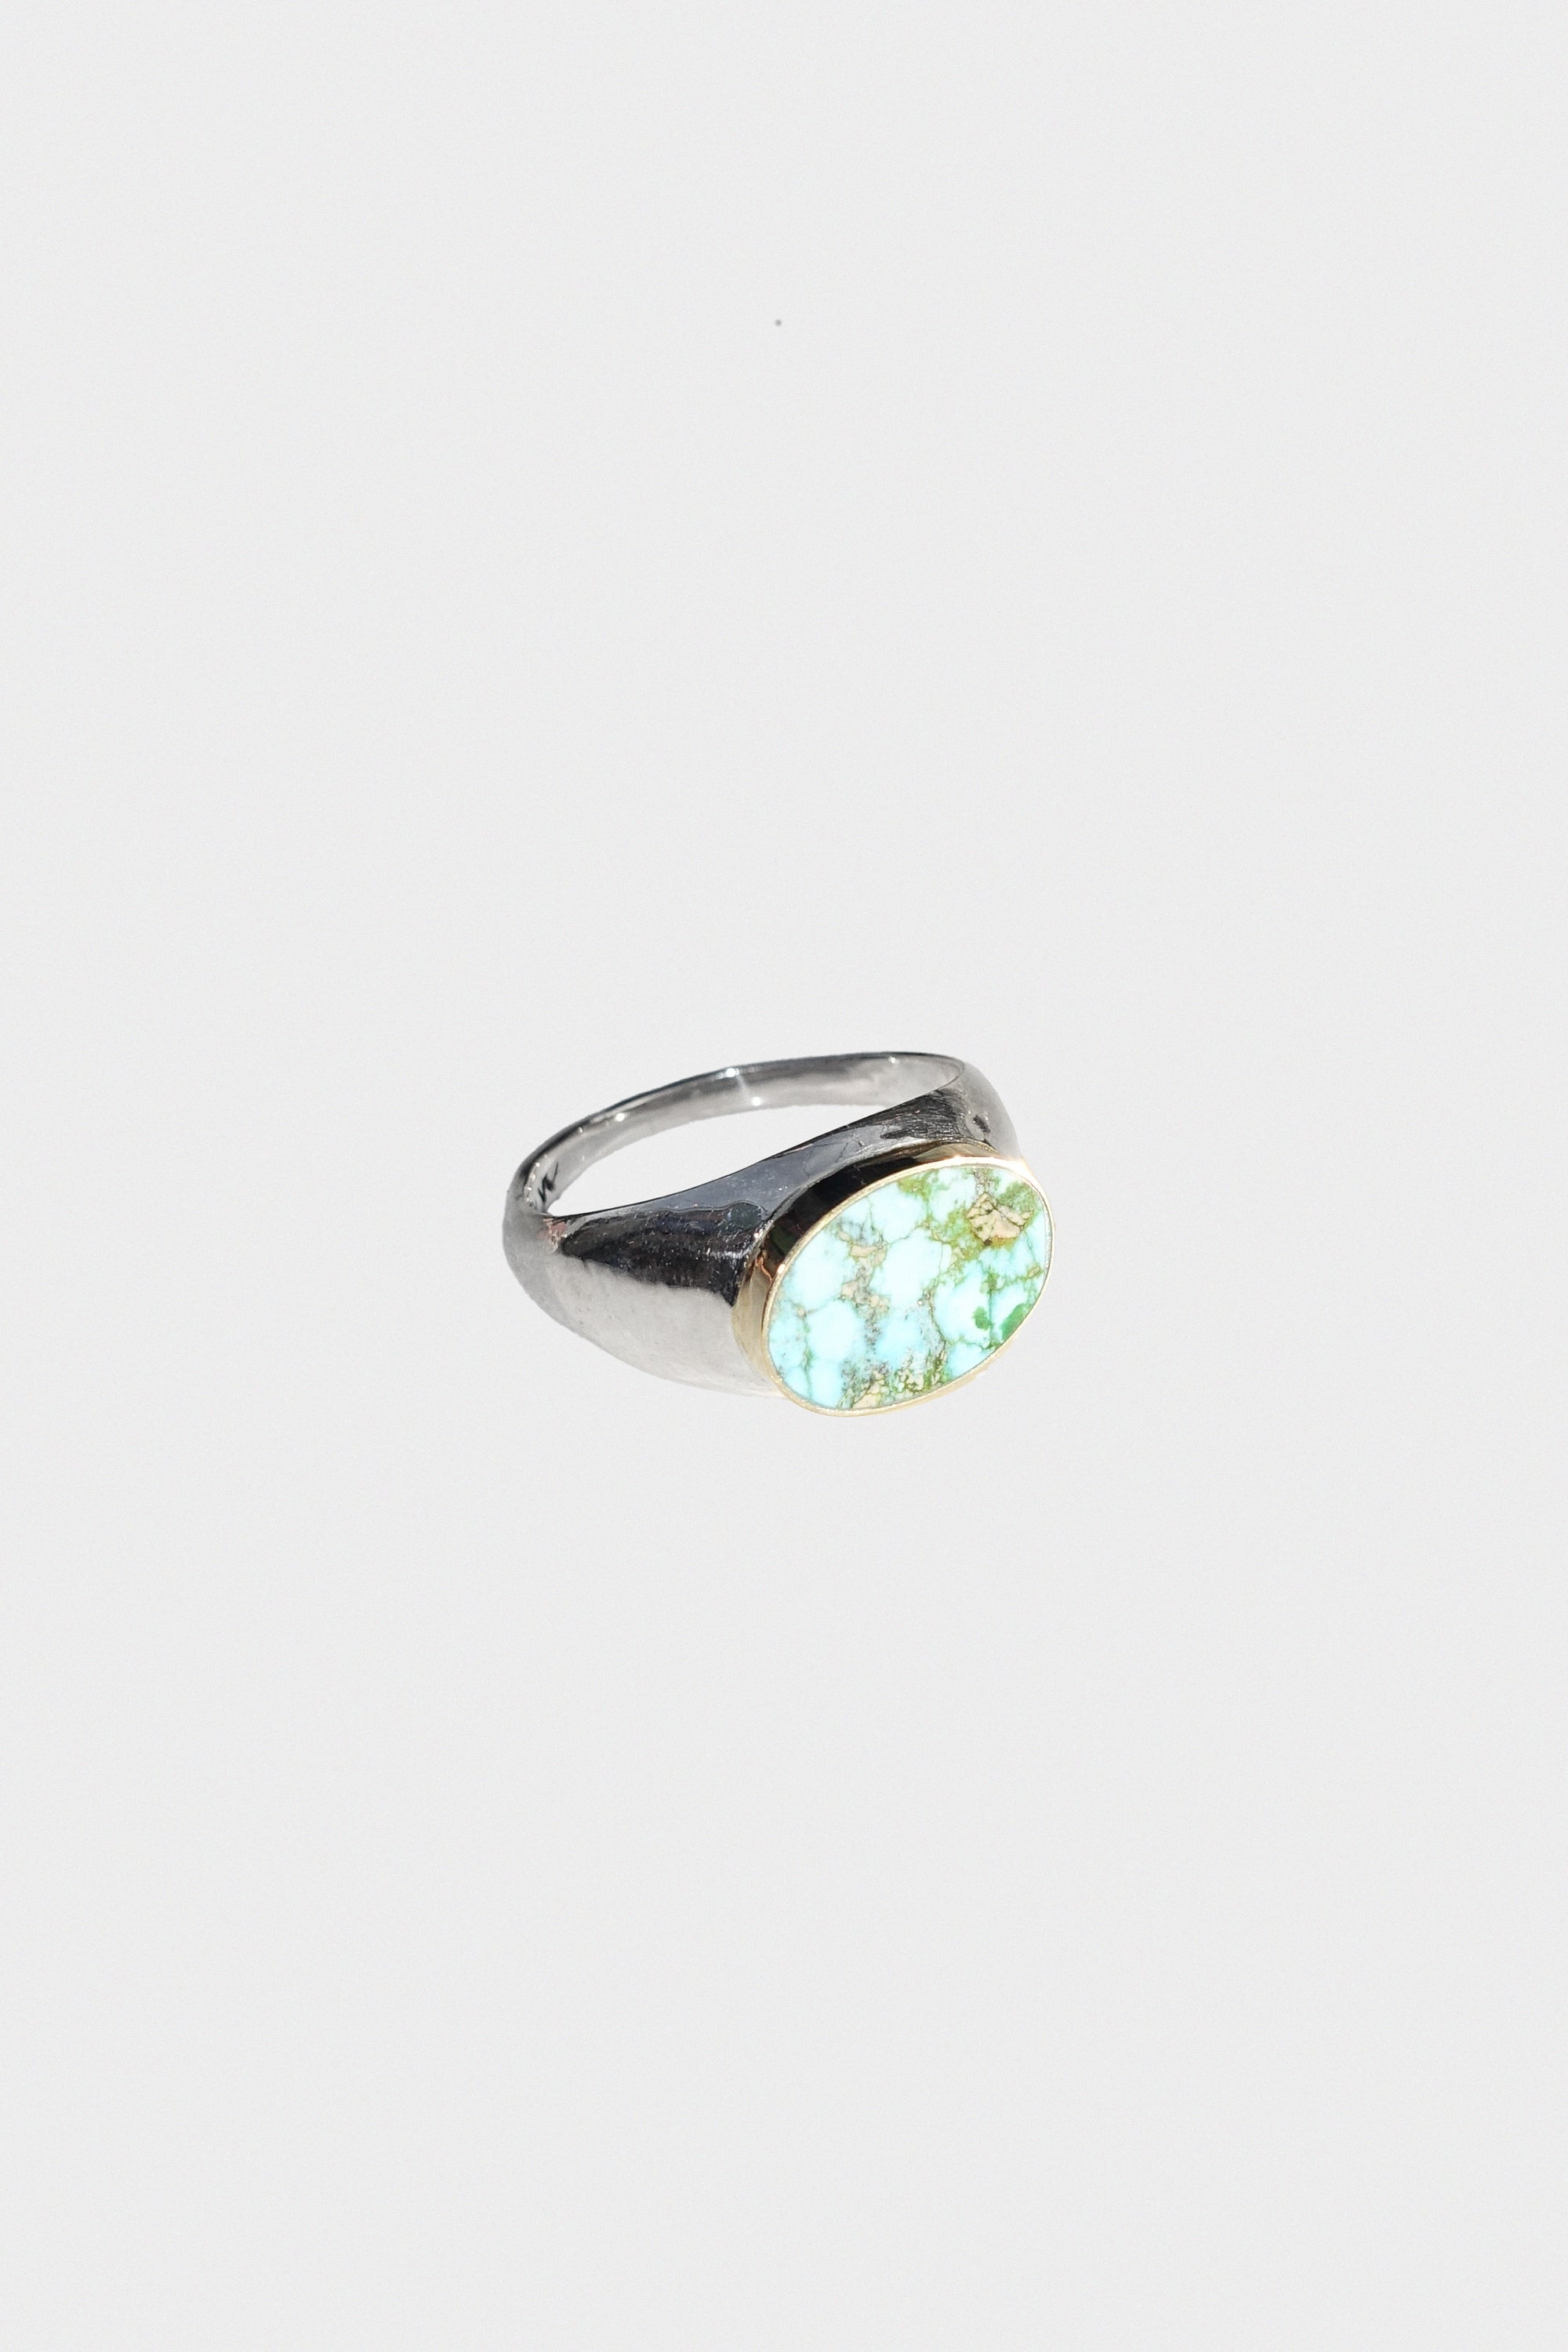 Kingman Turquoise Signet Ring